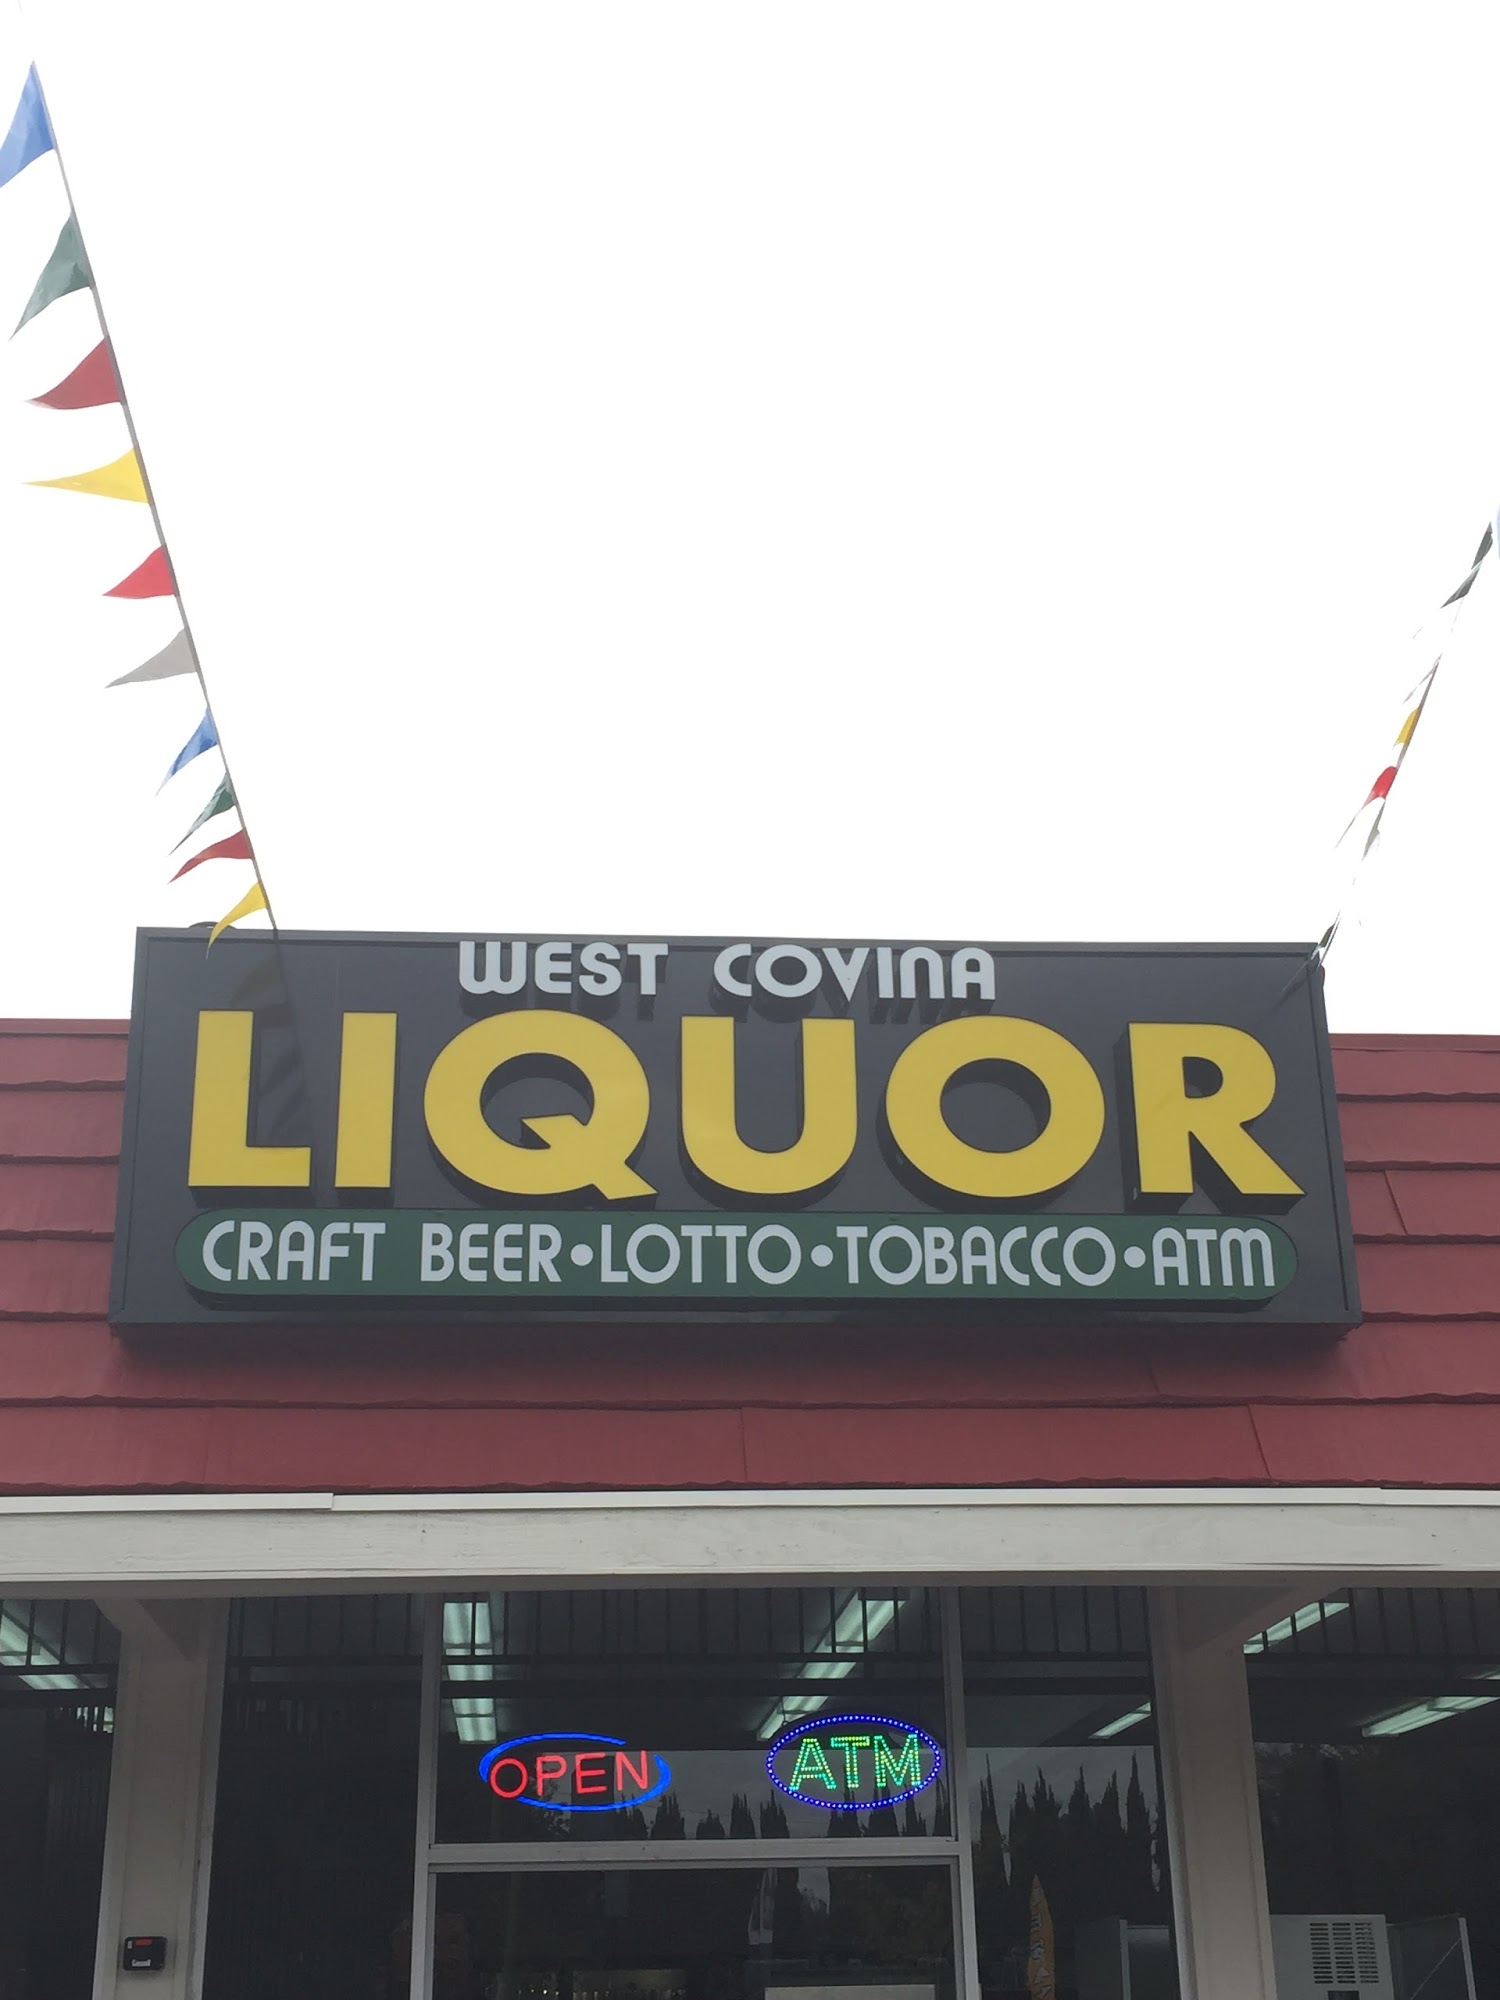 West Covina Liquor